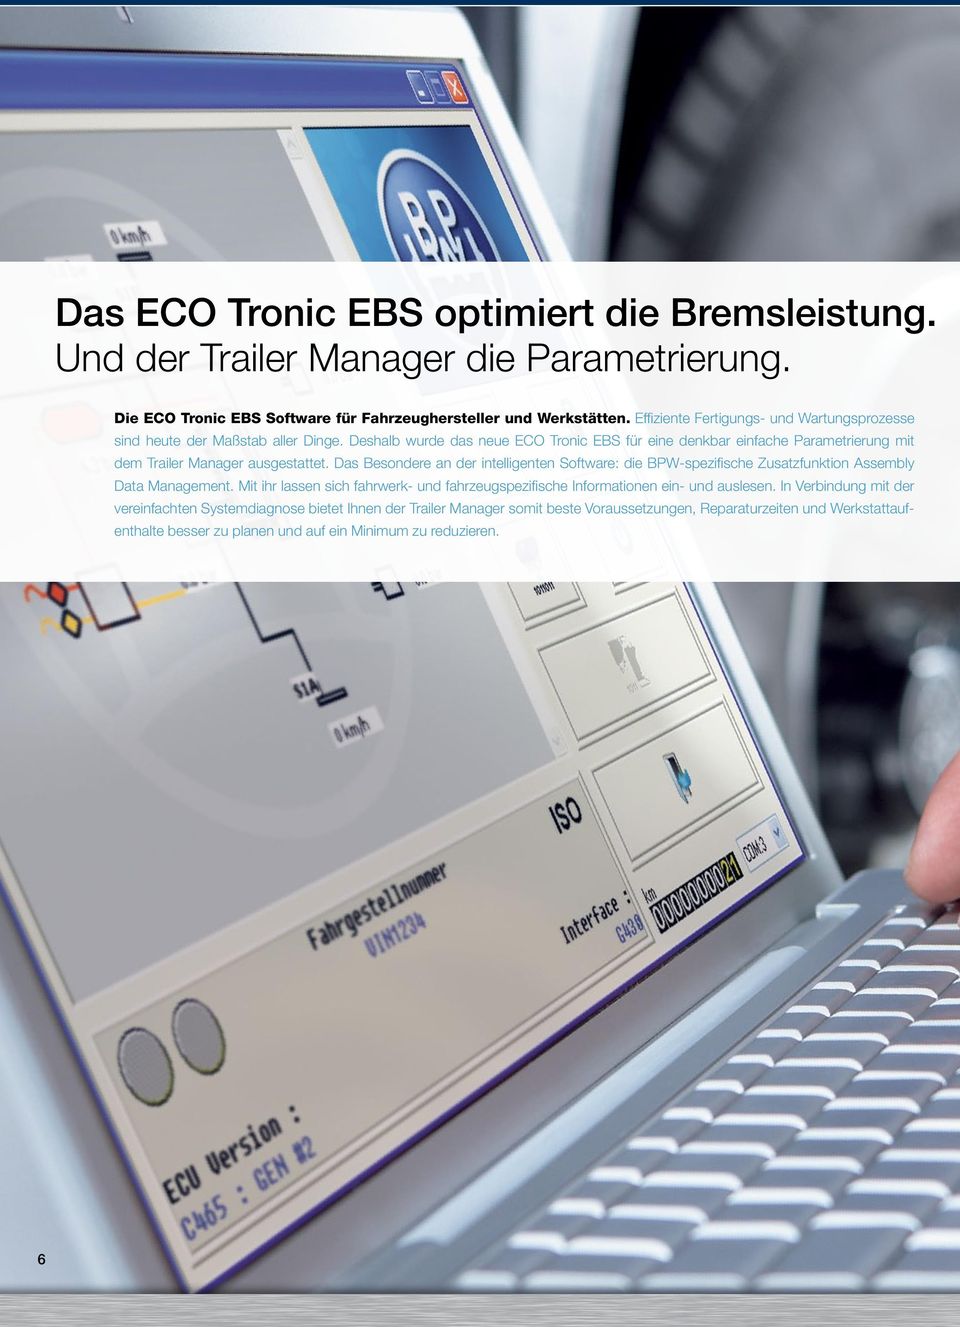 Deshalb wurde das neue ECO Tronic EBS für eine denkbar einfache Parametrierung mit dem Trailer Manager ausgestattet.